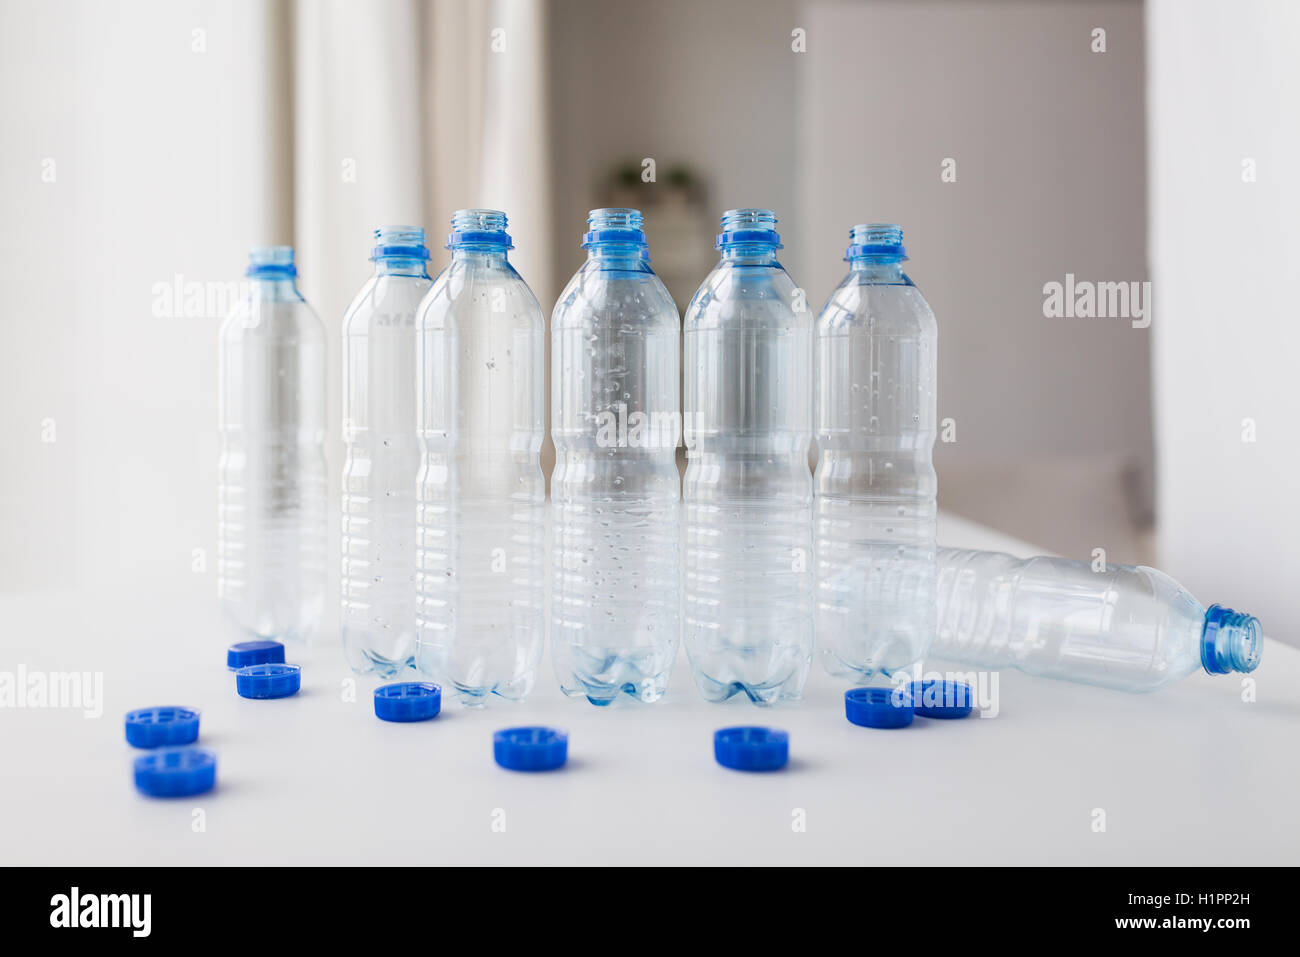 https://c8.alamy.com/compes/h1pp2h/cierre-de-las-botellas-de-agua-vacias-y-tapas-de-mesa-h1pp2h.jpg